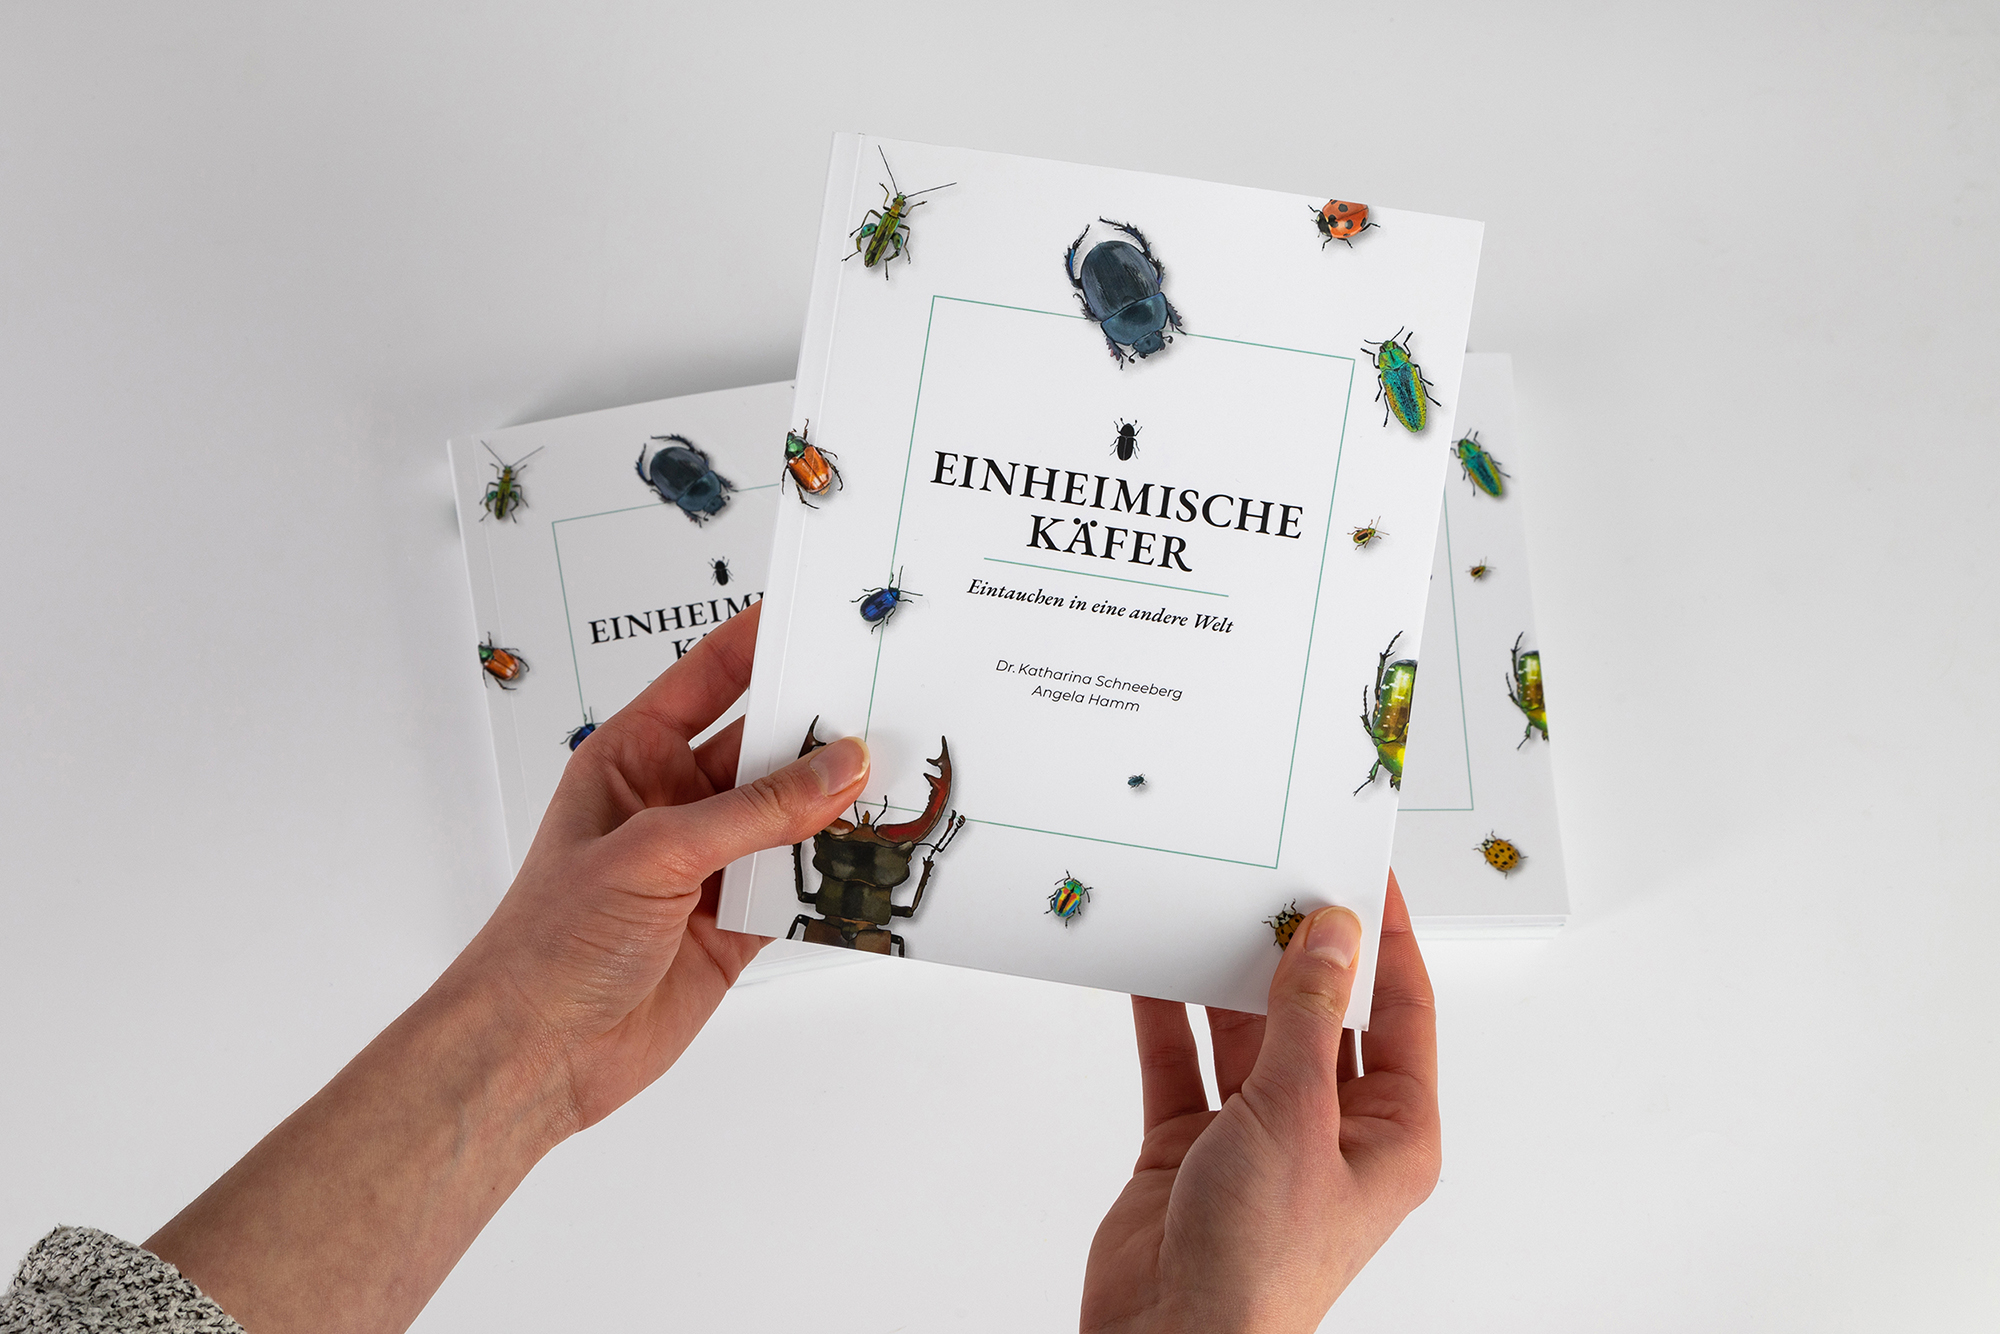 Einheimische Käfer Angela Hamm Call for Creatives